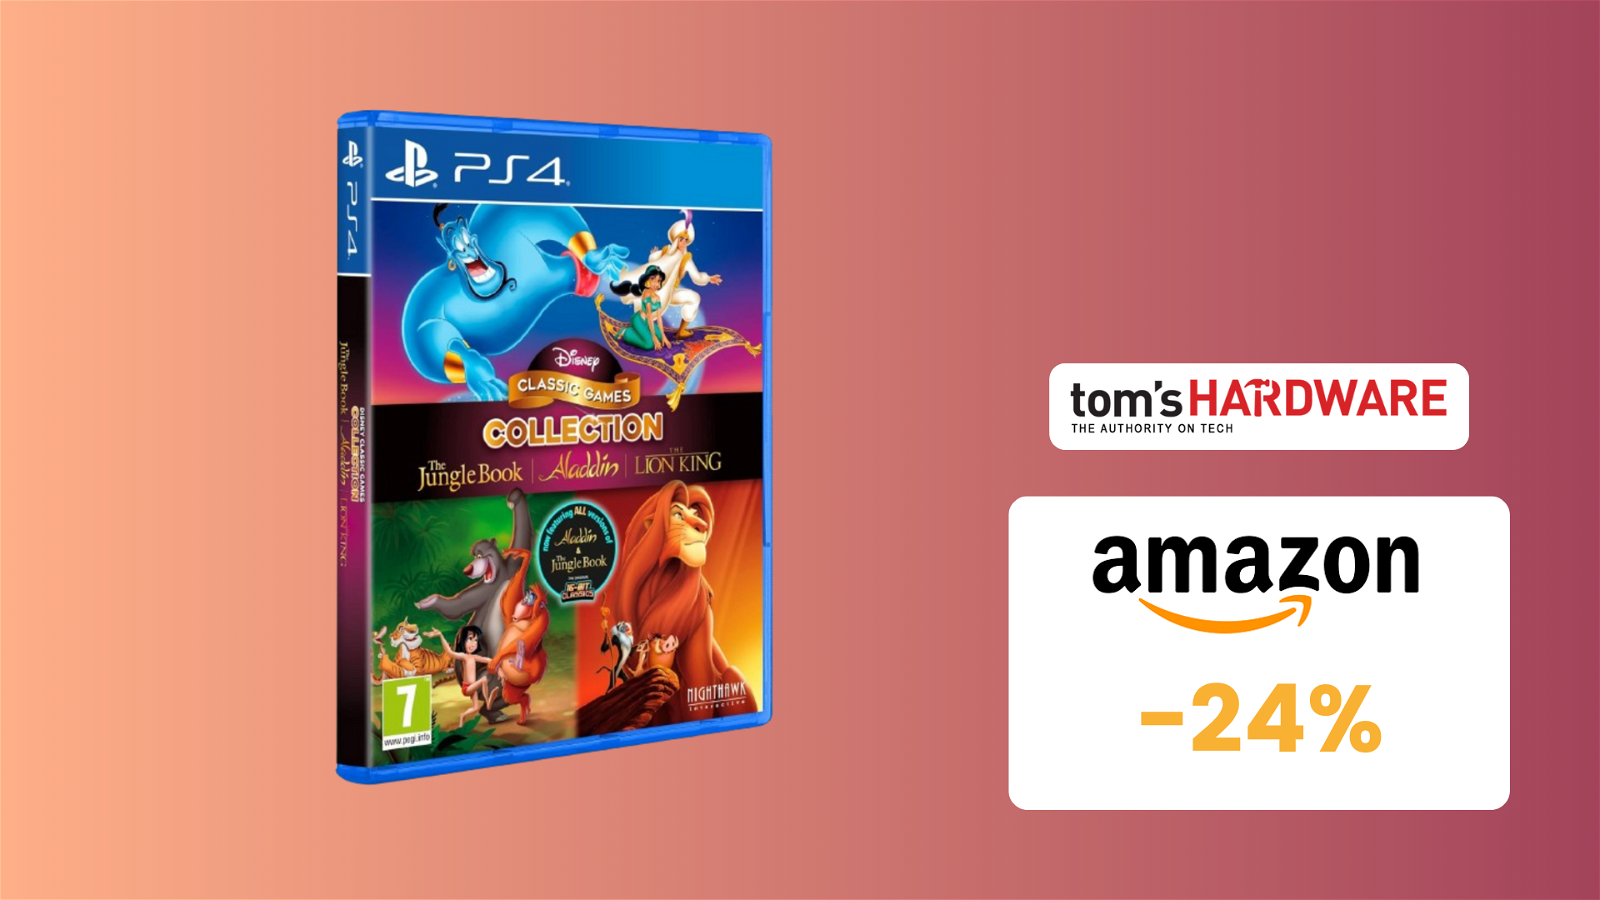 Immagine di BELLISSIMA Disney Classic Games Collection per PS4 in SCONTO a 13€! (-24%)